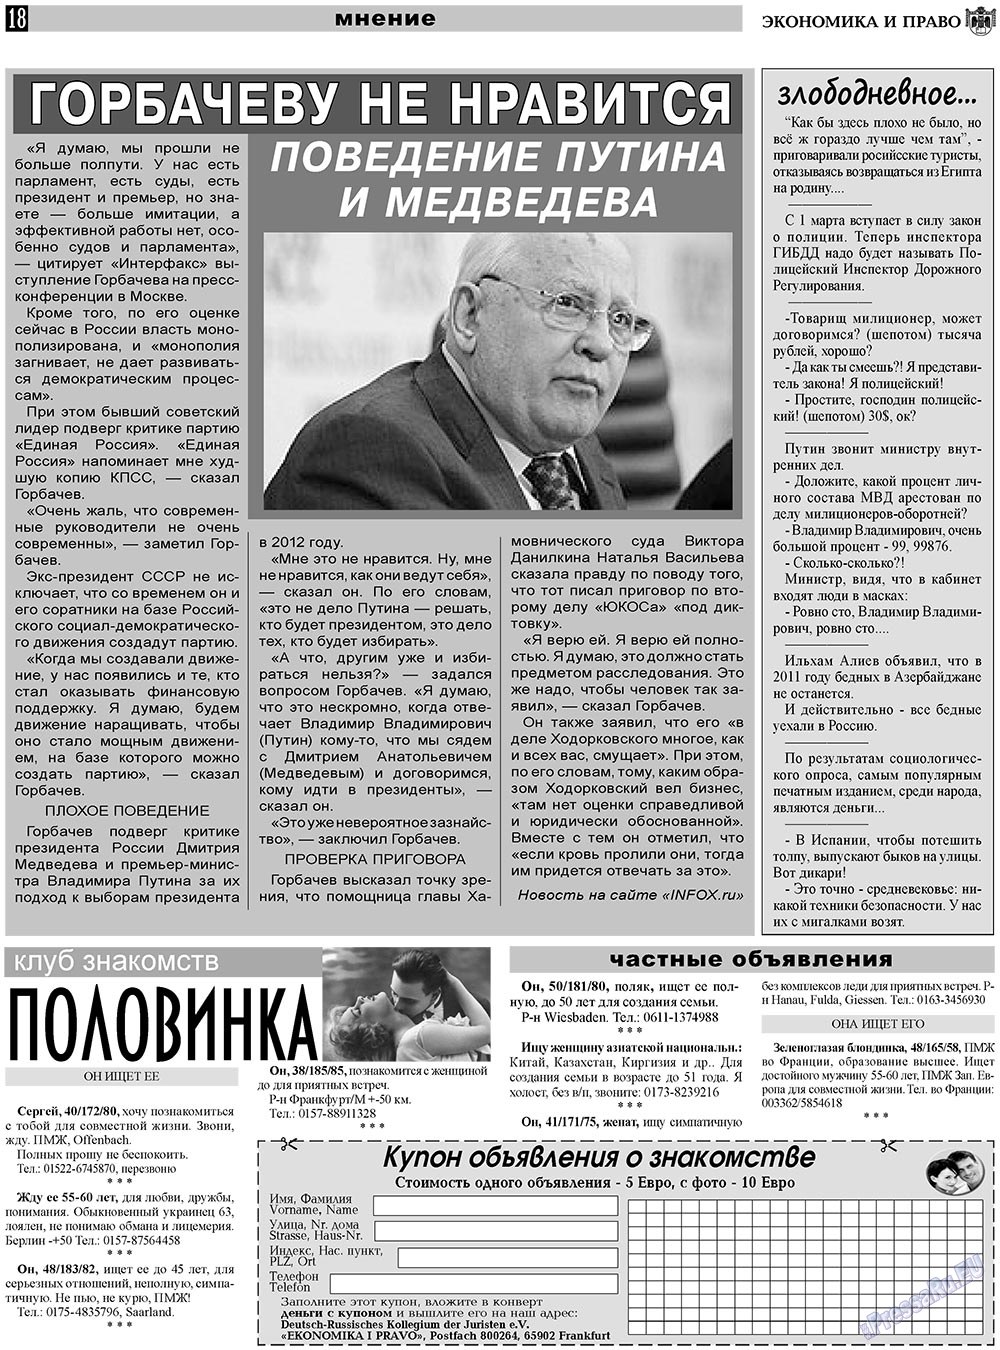 Экономика и право, газета. 2011 №3 стр.18